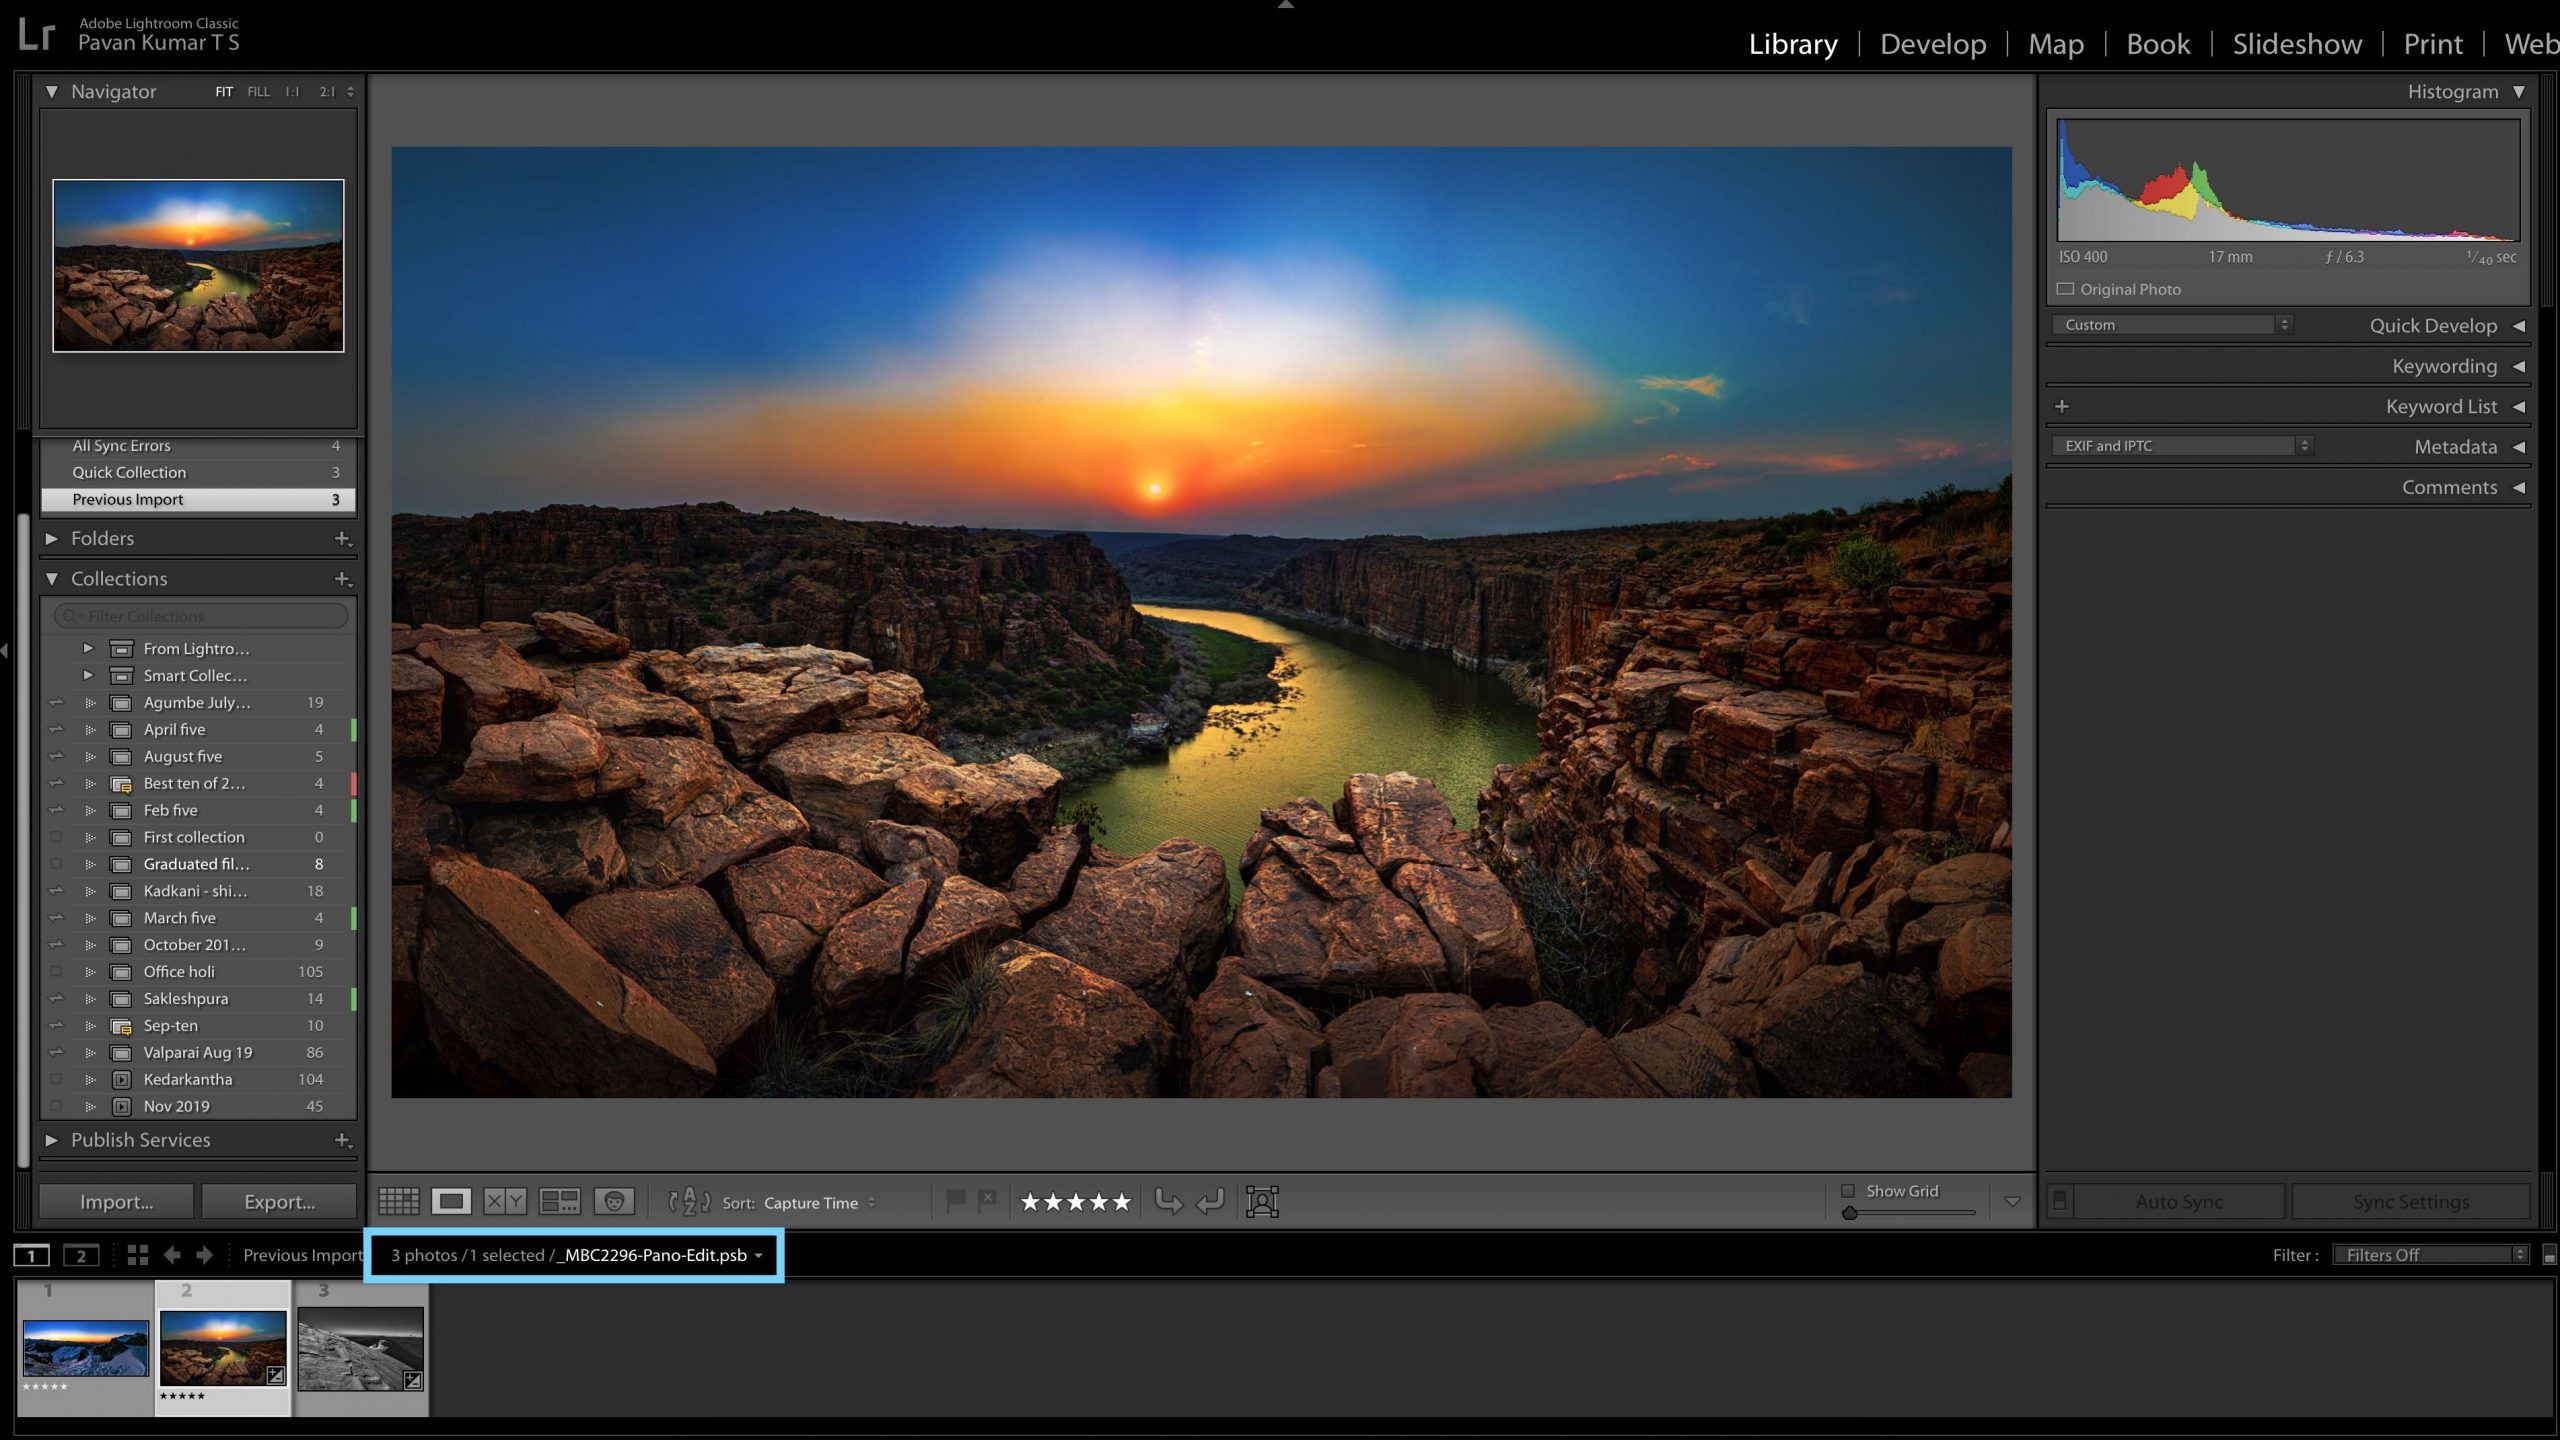 Adobe mang đến các tính năng mới cho Lightroom như Split View trên iPad và các tùy chọn xuất mới 2